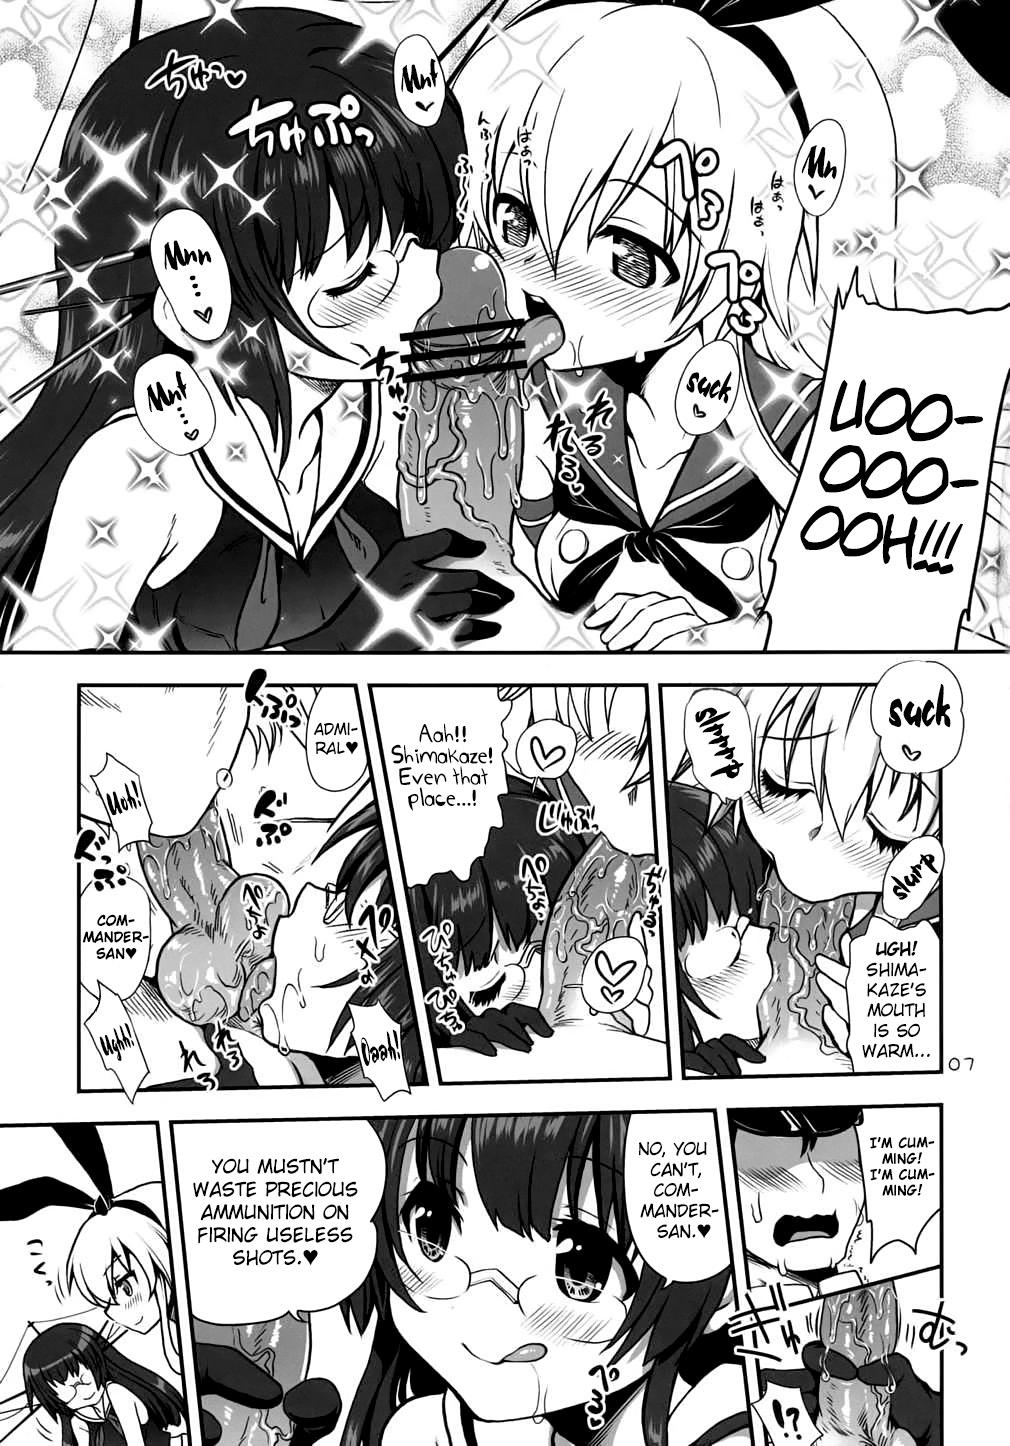 Casada a hack aim you Shimakaze Choukai no Daisakusen! Maya-sama o Kaijuu seyo!! - Kantai collection Dicks - Page 6